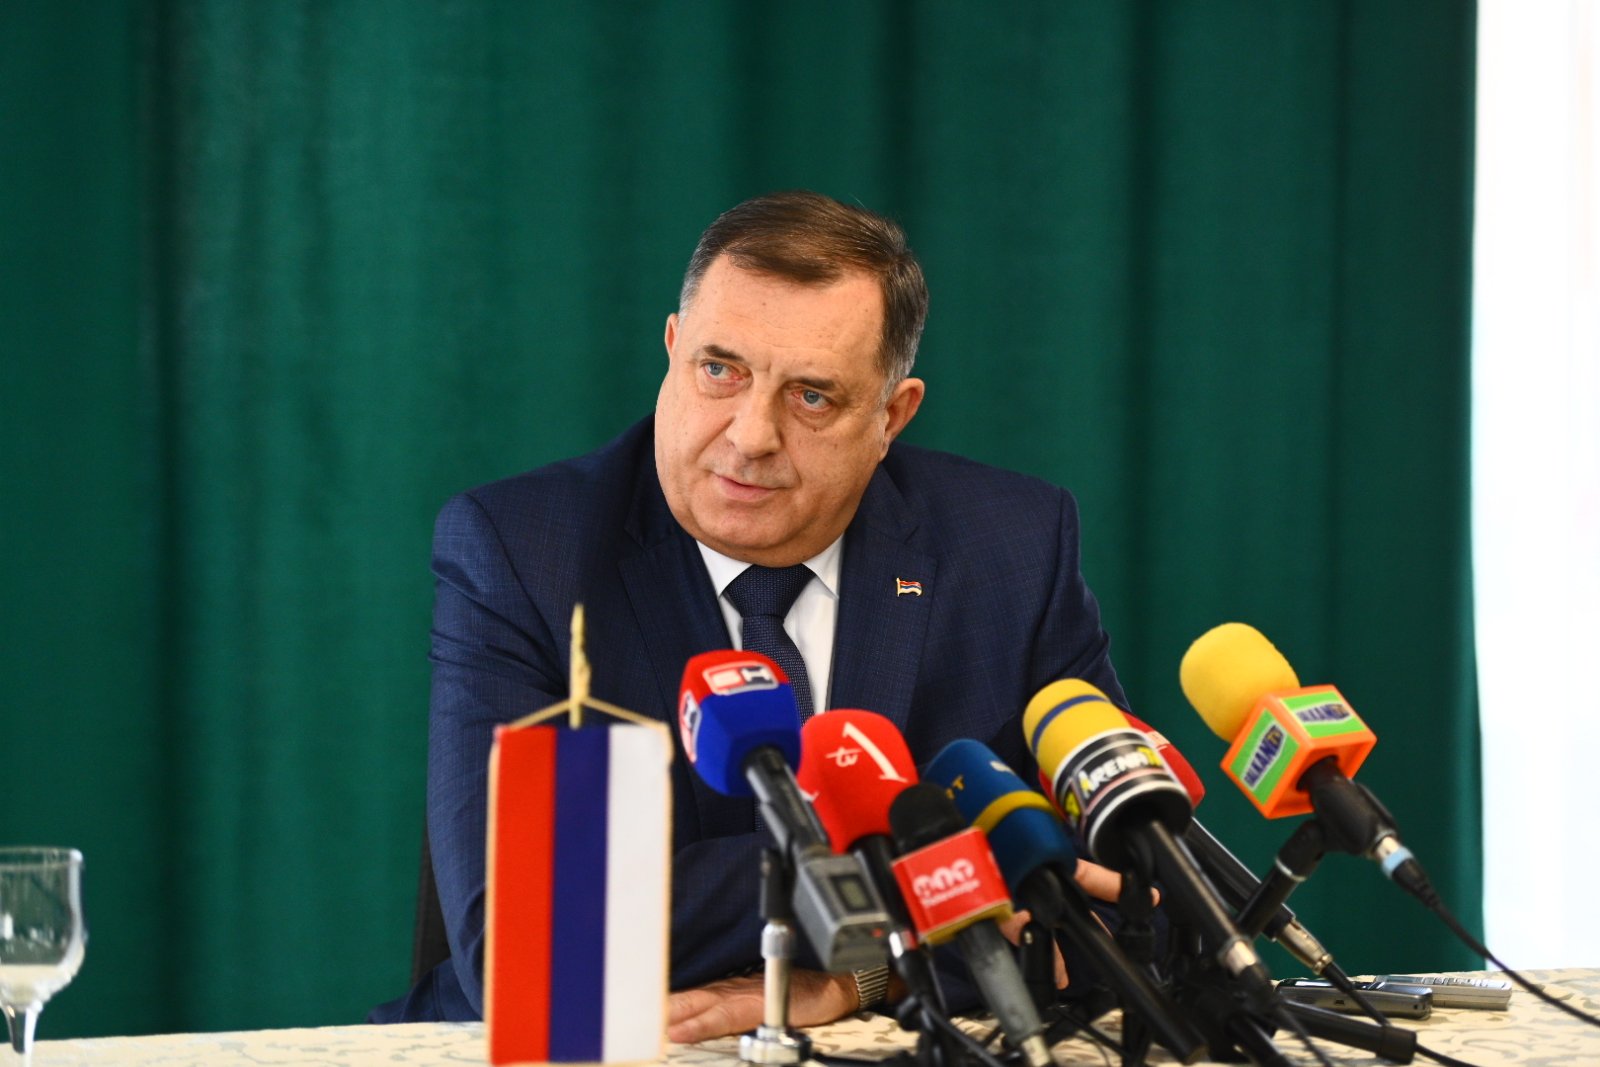 Dodik: Srpska je za mirno razgraničenje, a ne otcjepljenje